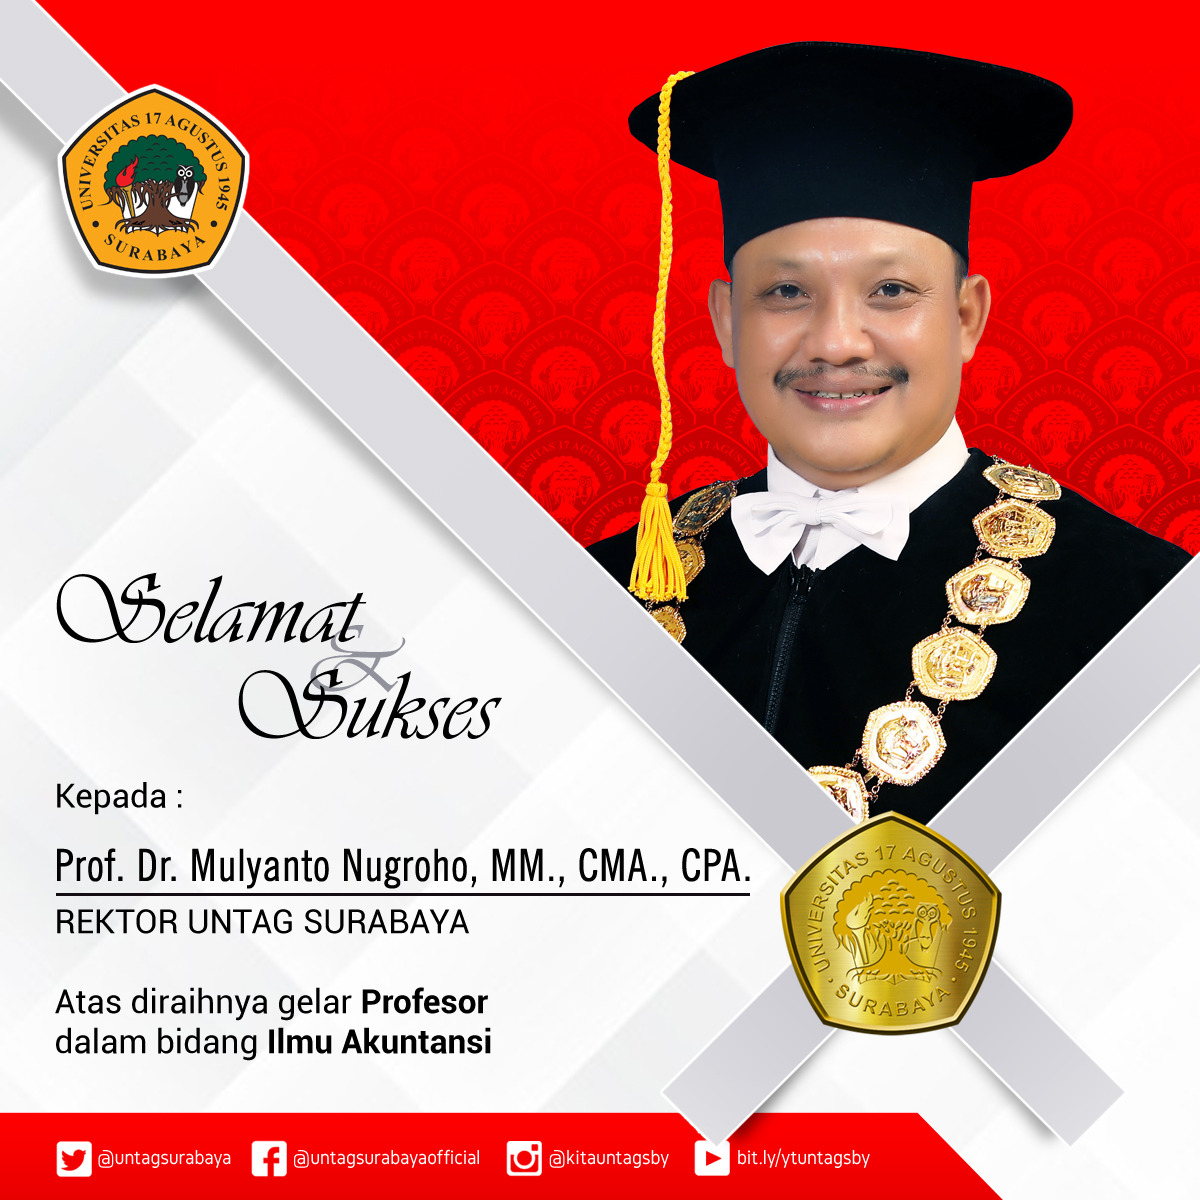 Ucapan Selamat Guru Besar Prof.Dr.Mulyanto Nugroho, MM.,CMA.,CPA.